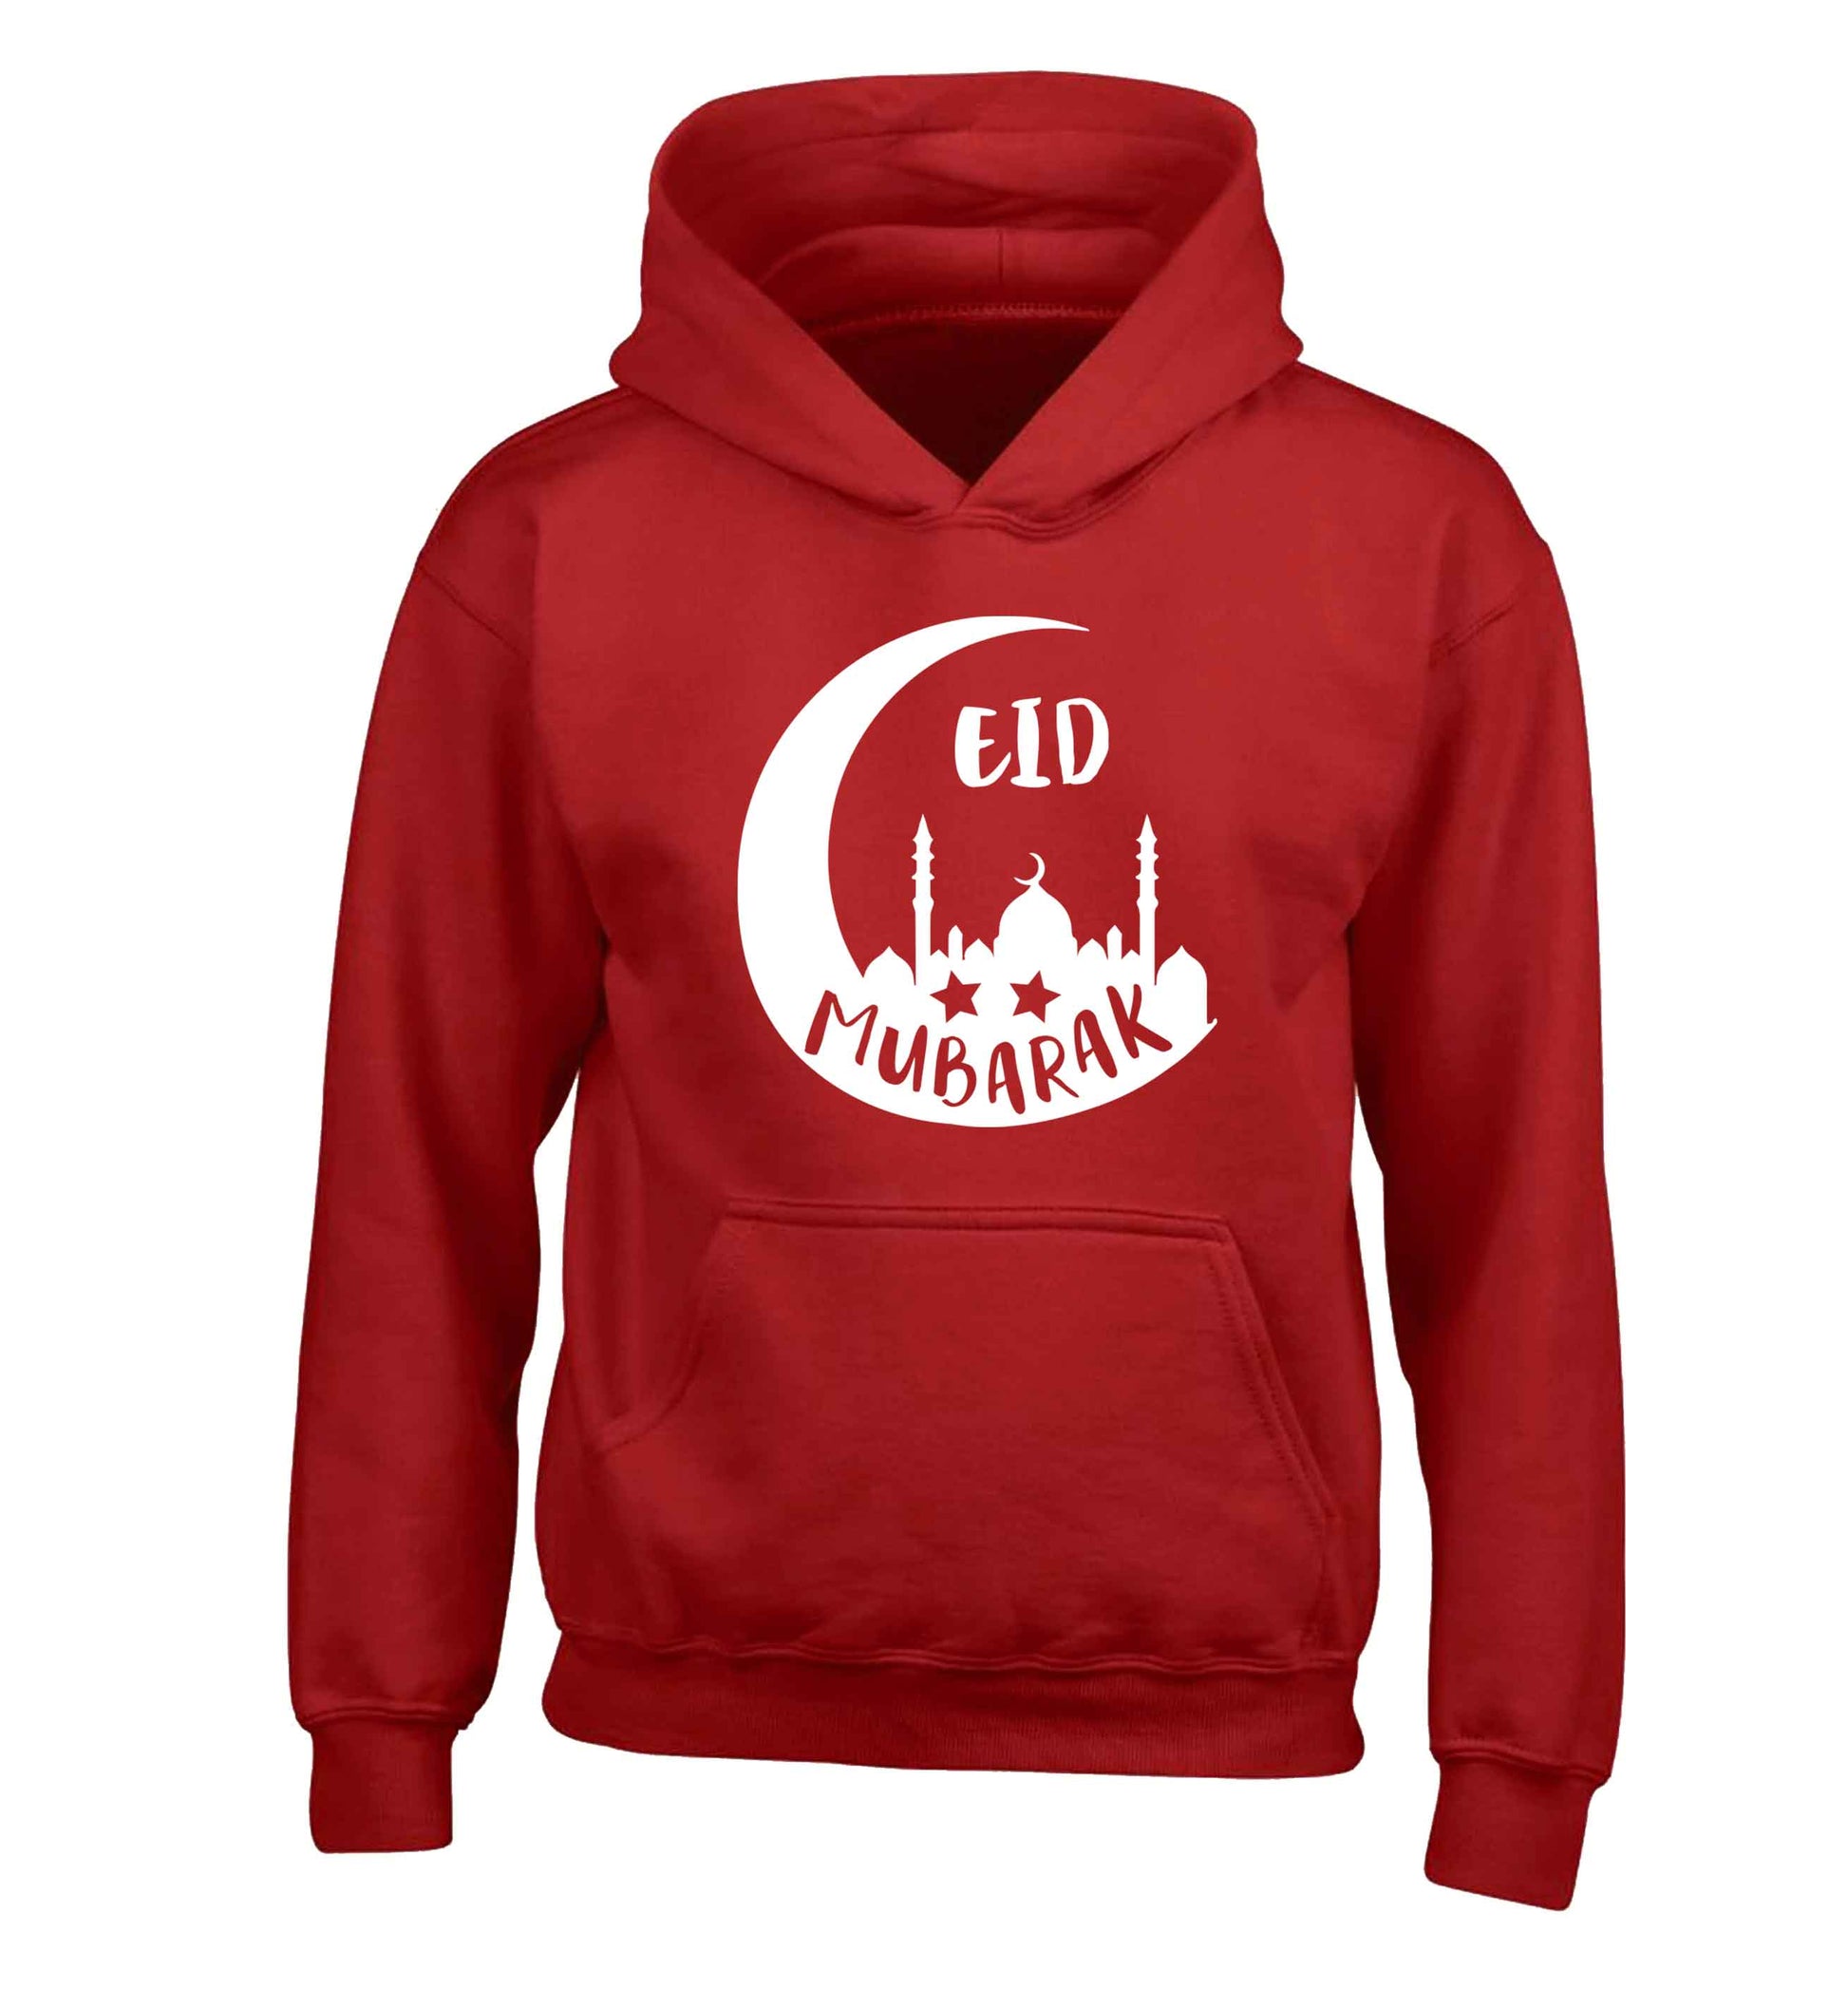 Eid mubarak children's red hoodie 12-13 Years